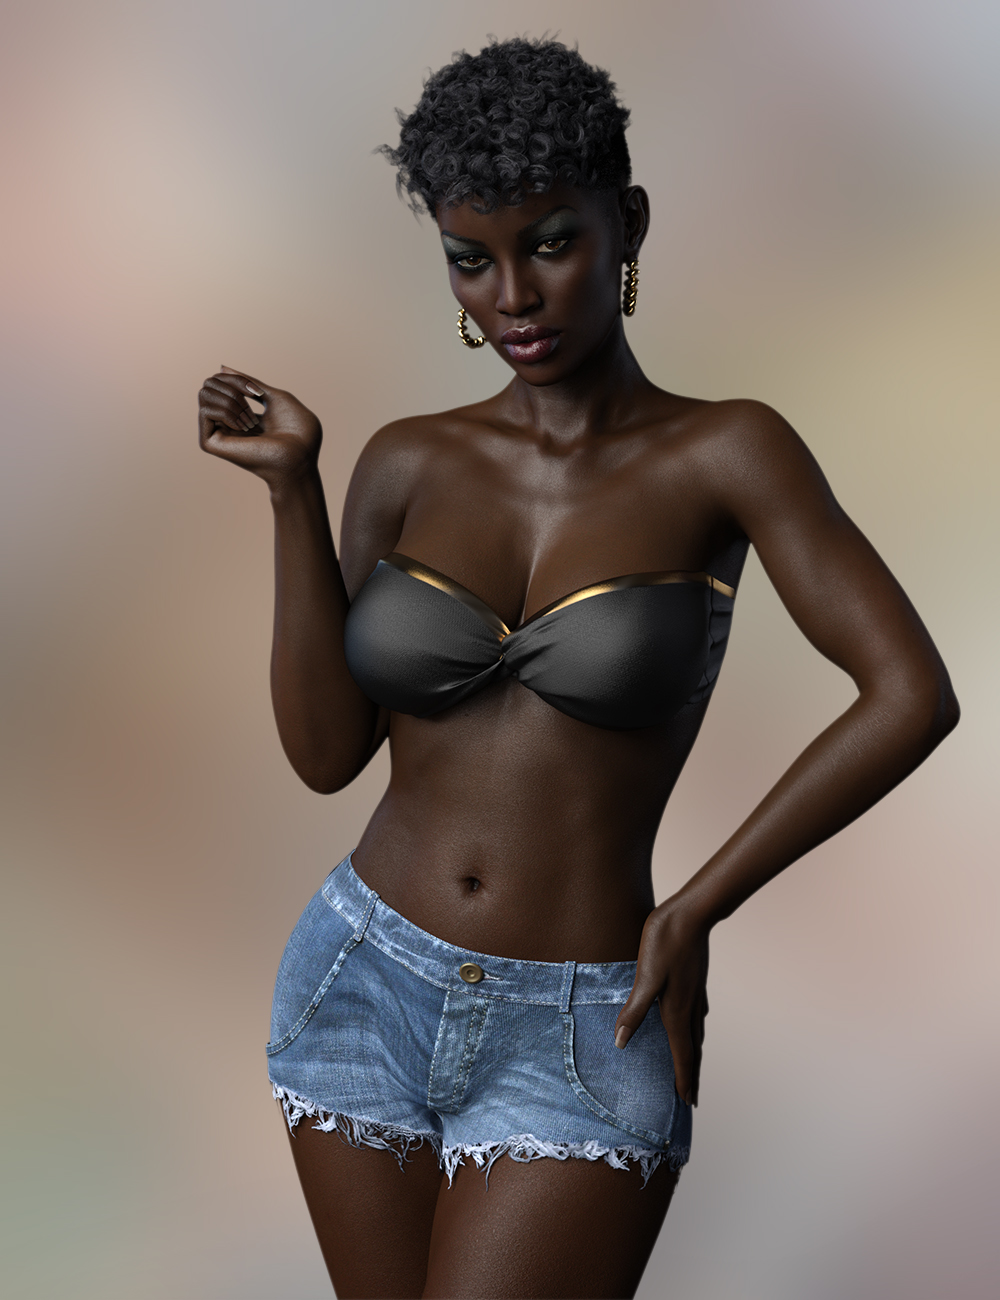 FWSA Imani HD for Monique 8 by: Fred Winkler ArtSabby, 3D Models by Daz 3D